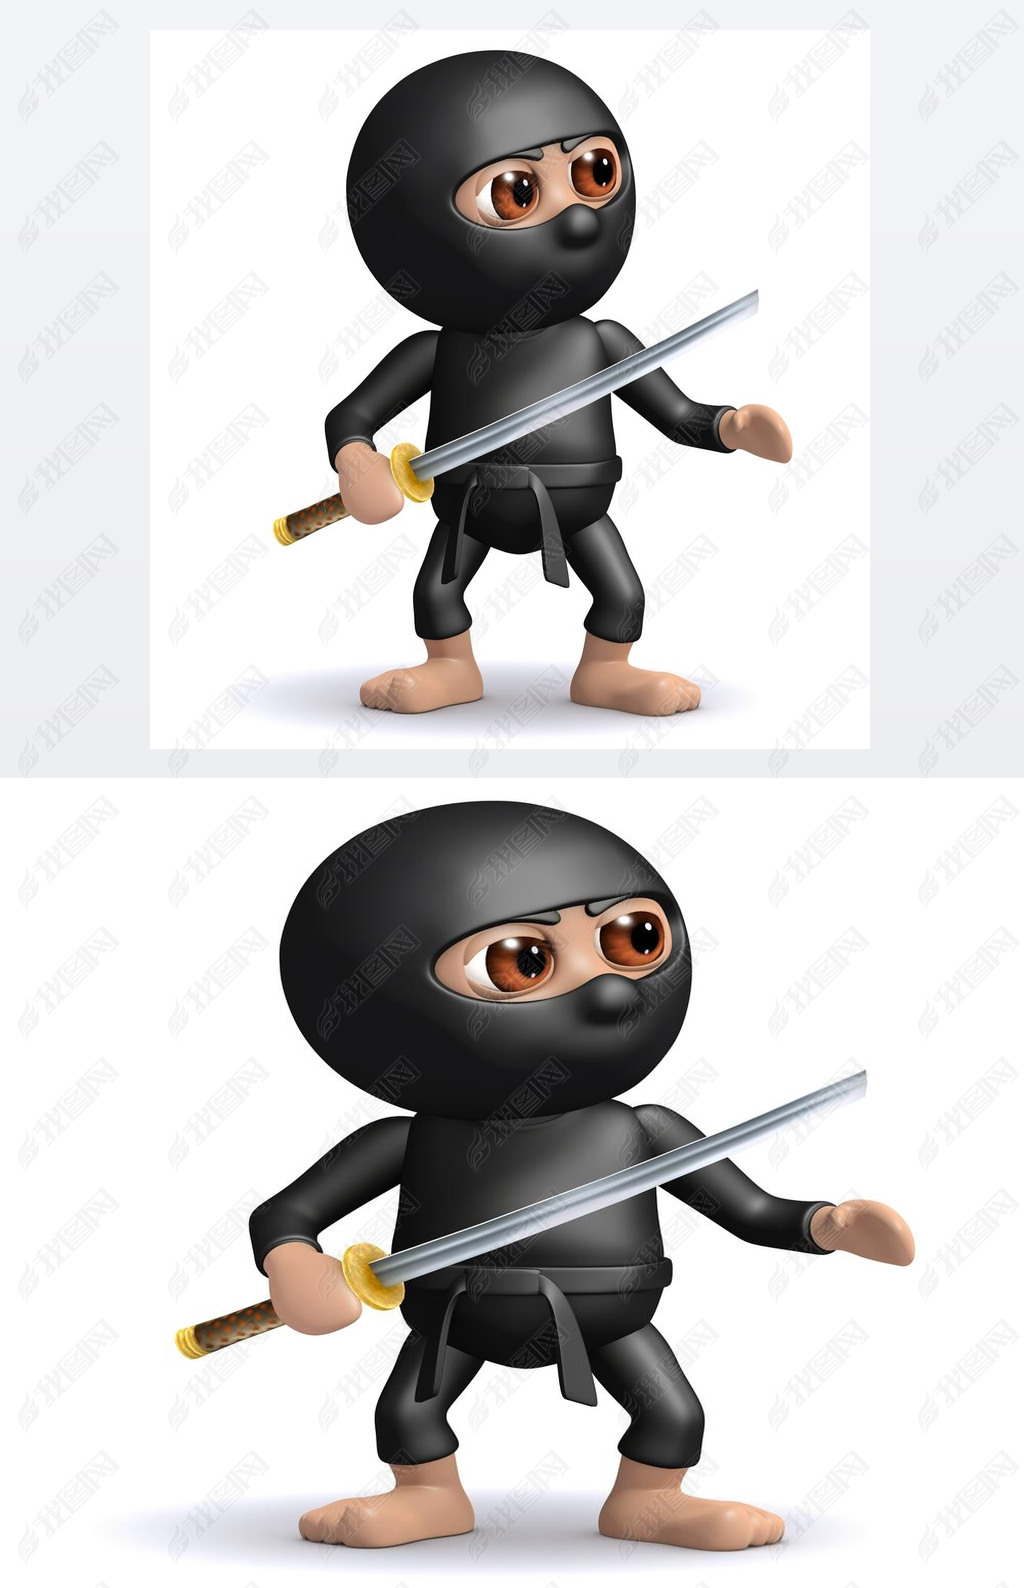 3d render of a ninja holding a katana